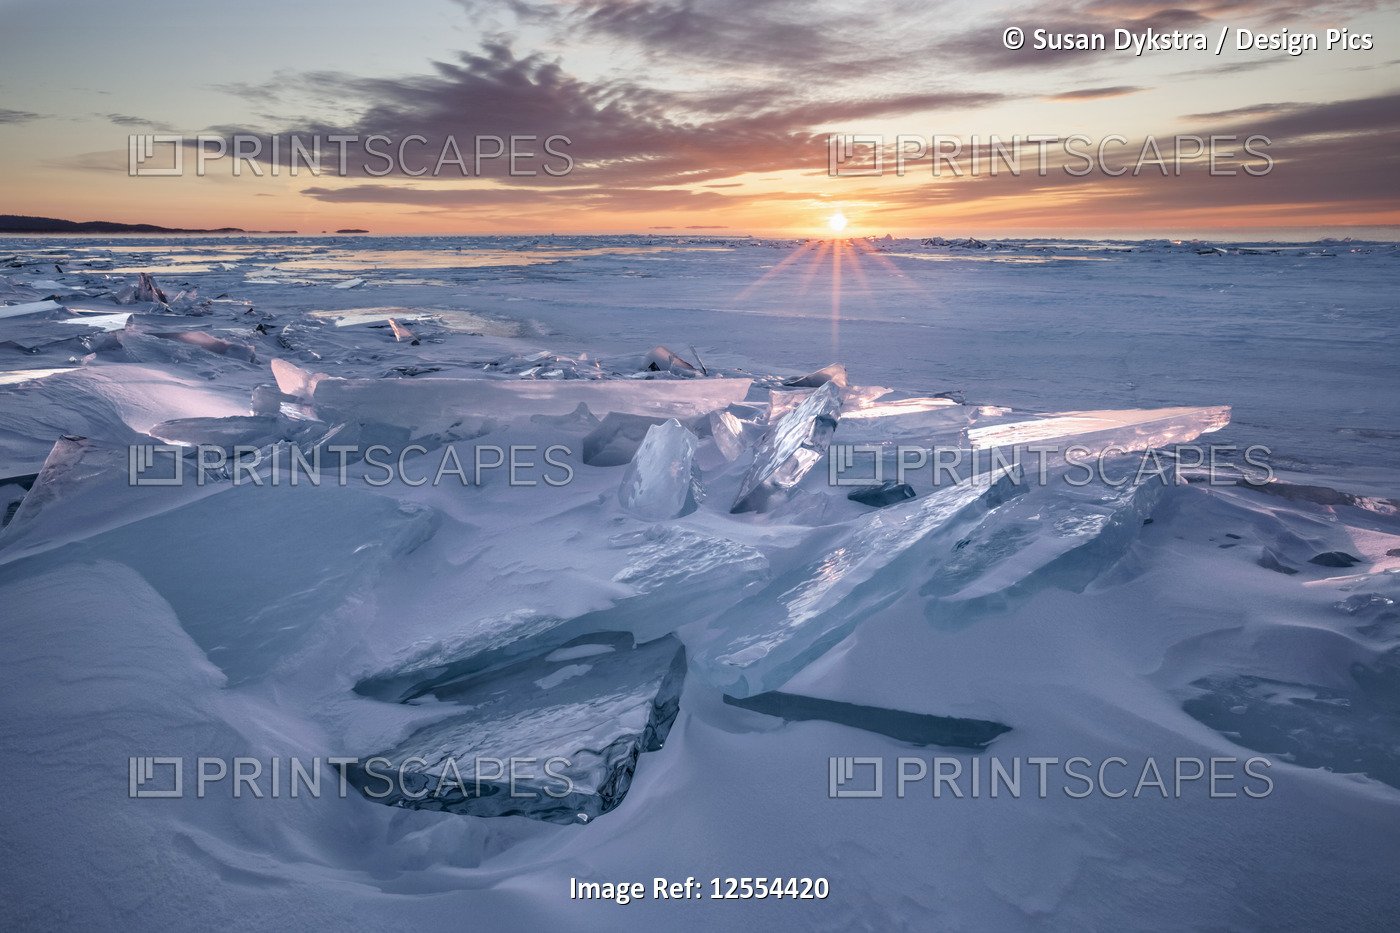 Sunlit Ice Chards on Lake Superior #3